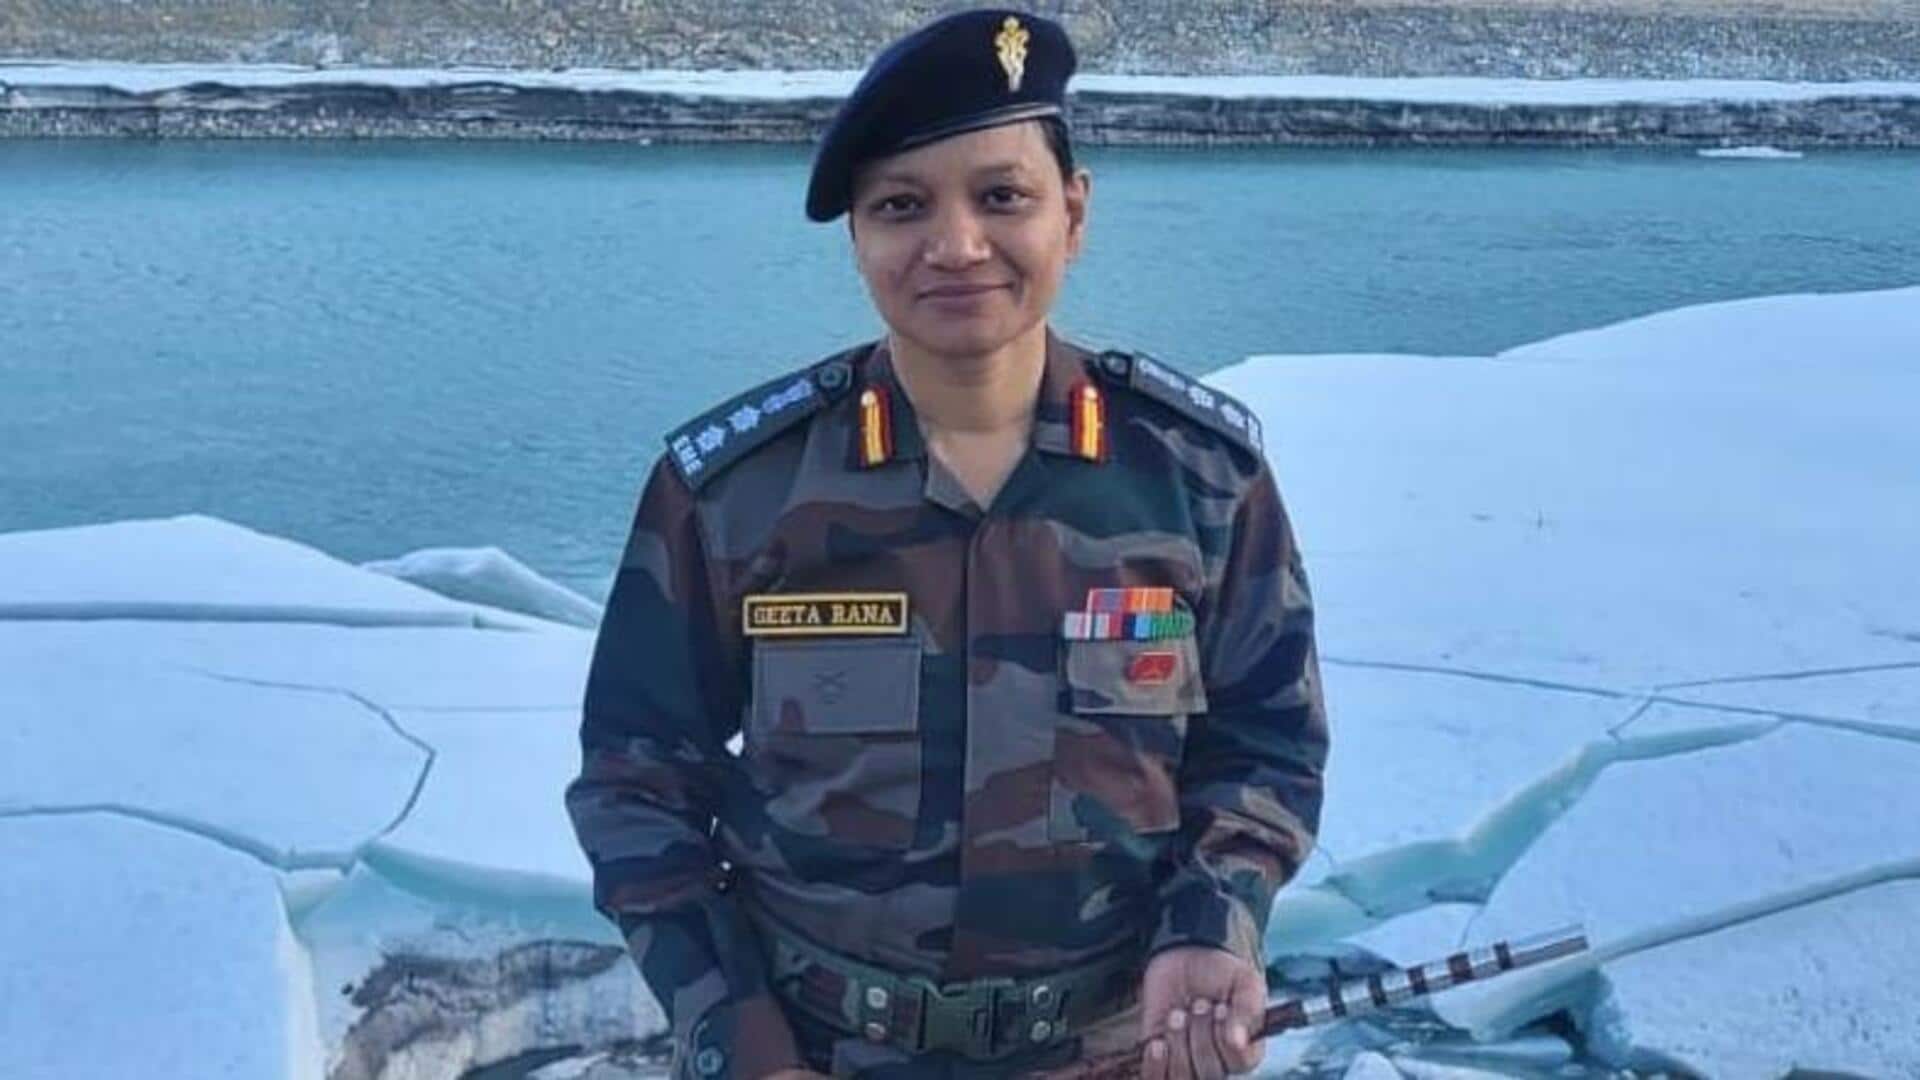 कर्नल गीता राणा बनीं लद्दाख में भारत-चीन सीमा के पास तैनात होने वालीं पहली महिला अधिकारी